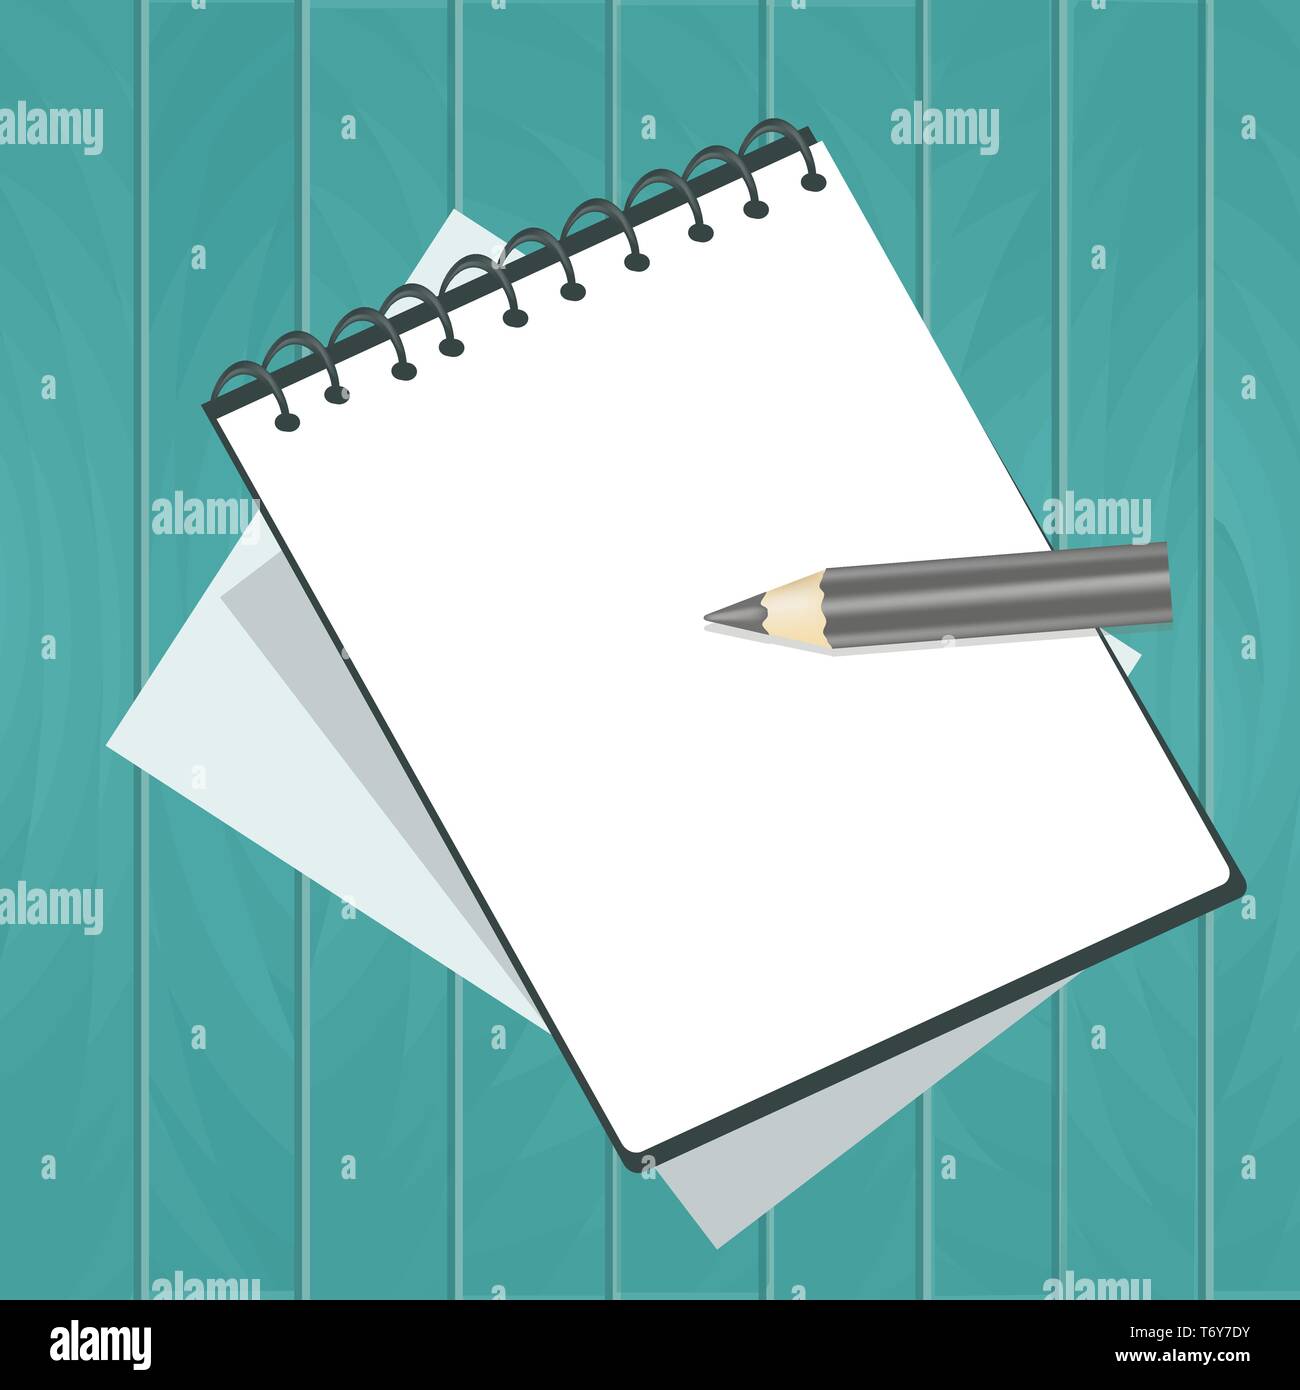 Notebook carnet de notes avec des feuilles au crayon sur un fond de bois conseil bleu turquoise Illustration de Vecteur